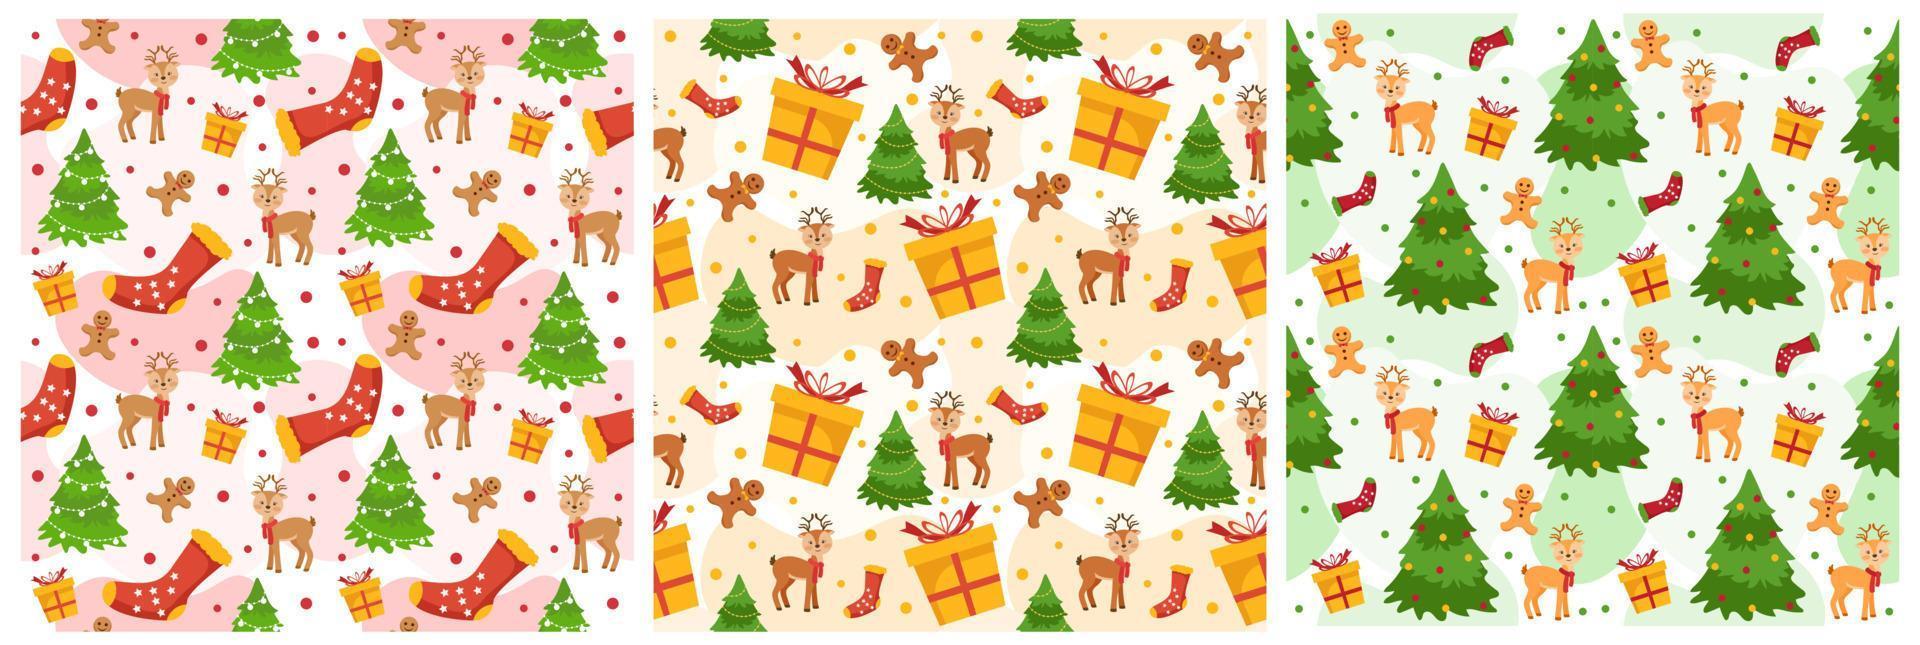 uppsättning av jul bakgrund sömlös mönster design med santa claus, träd, snögubbe och gåvor i mall hand dragen tecknad serie platt illustration vektor